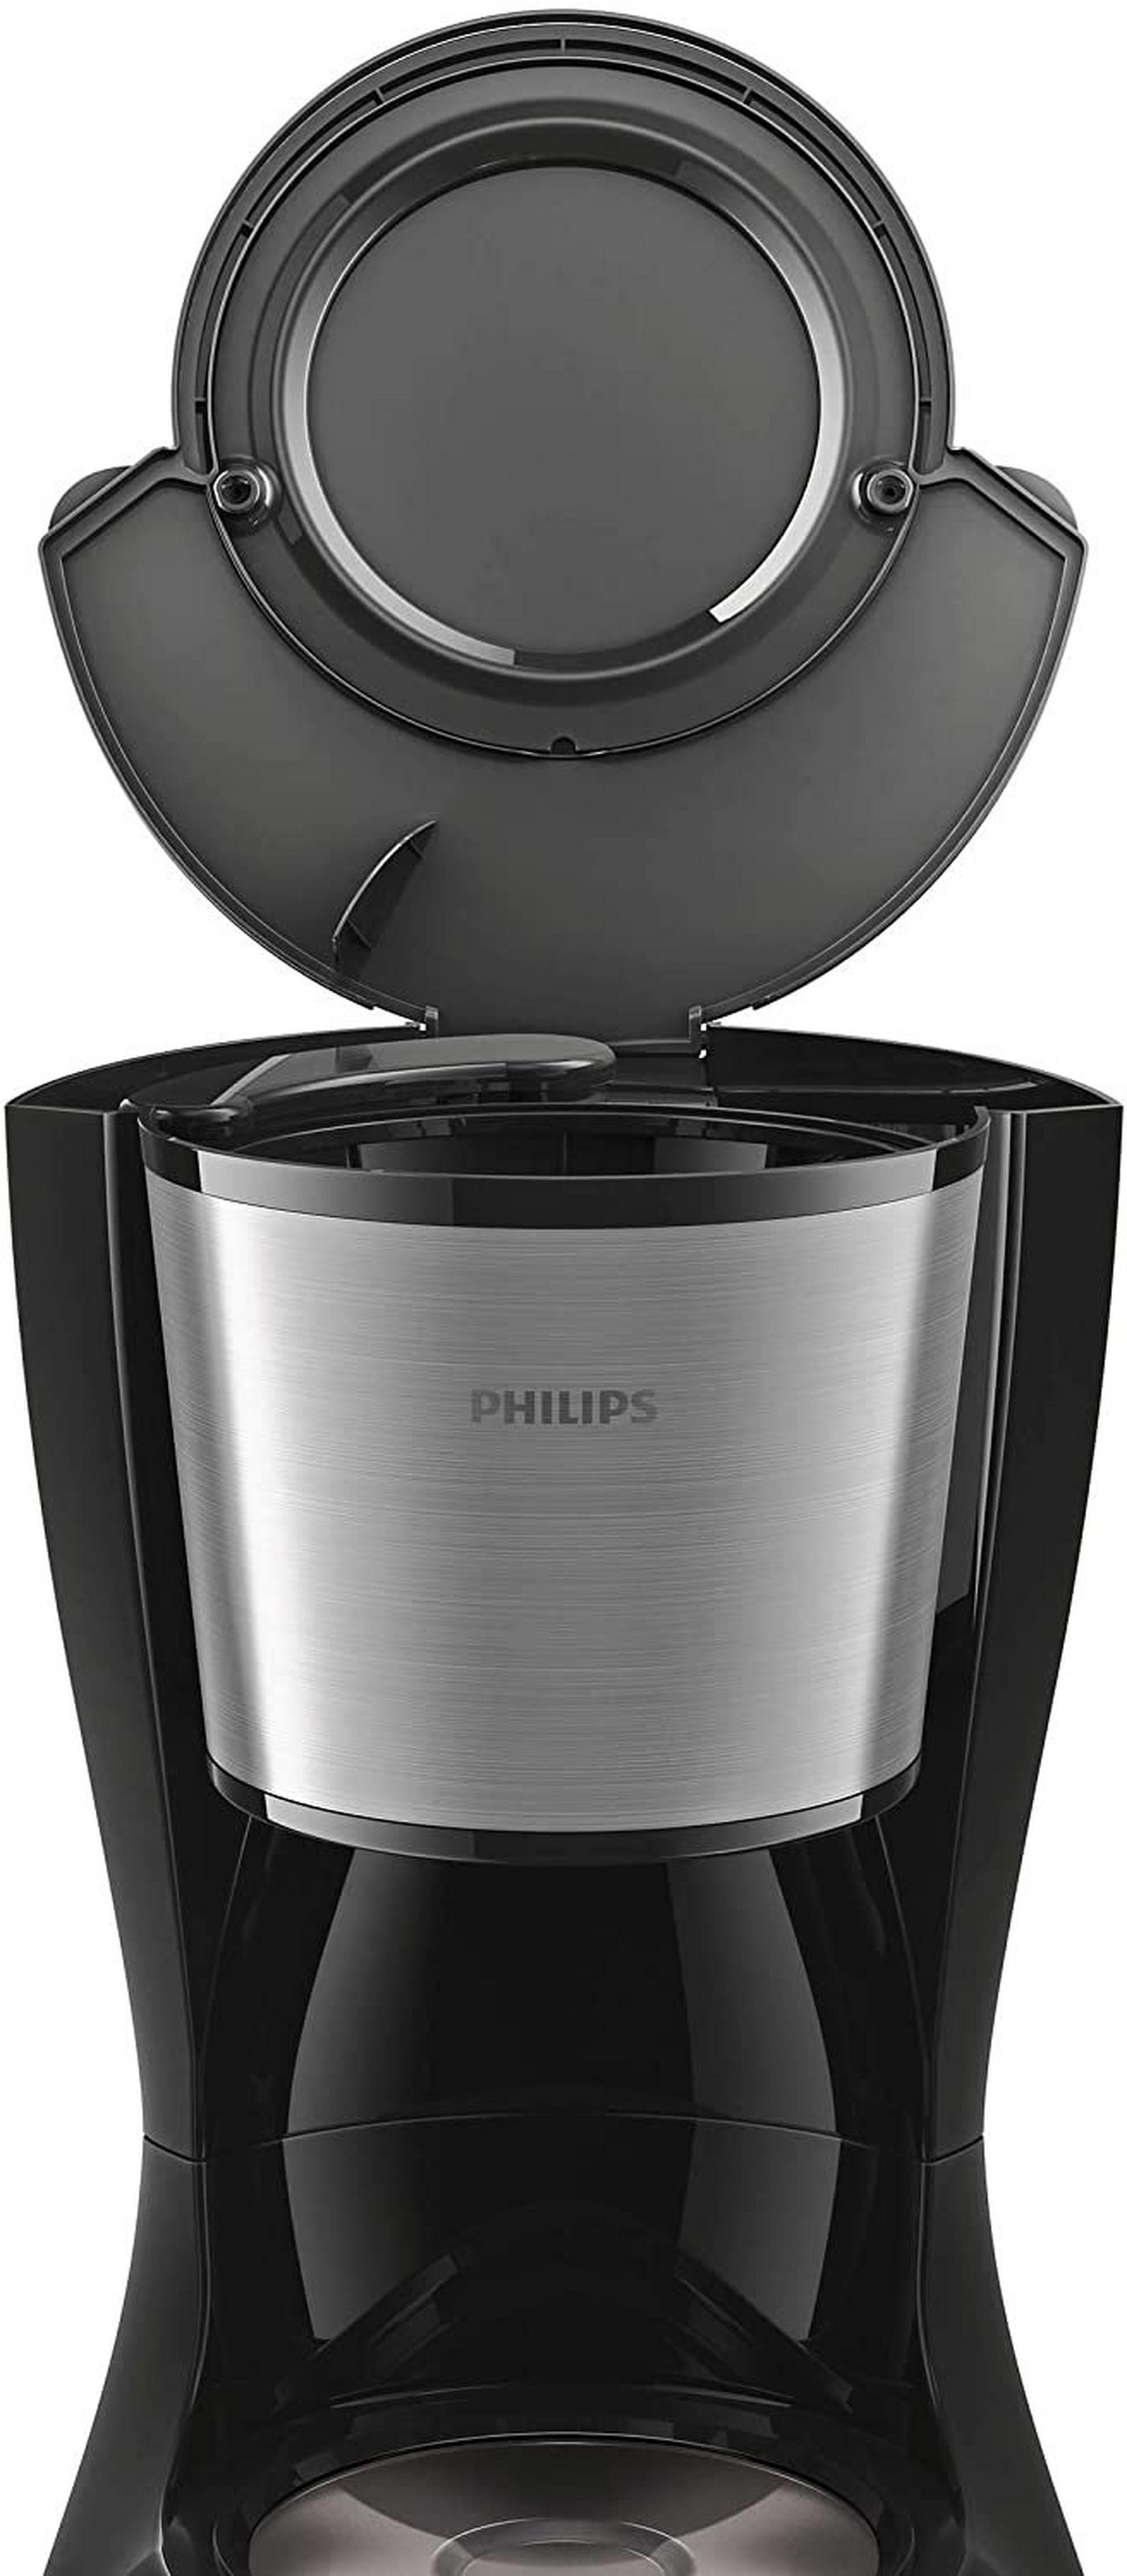 ماكينة تحضير القهوة من فيليبس، قدرة 1000 وات، سعة 1.2 لتر، HD7462/20 - أسود